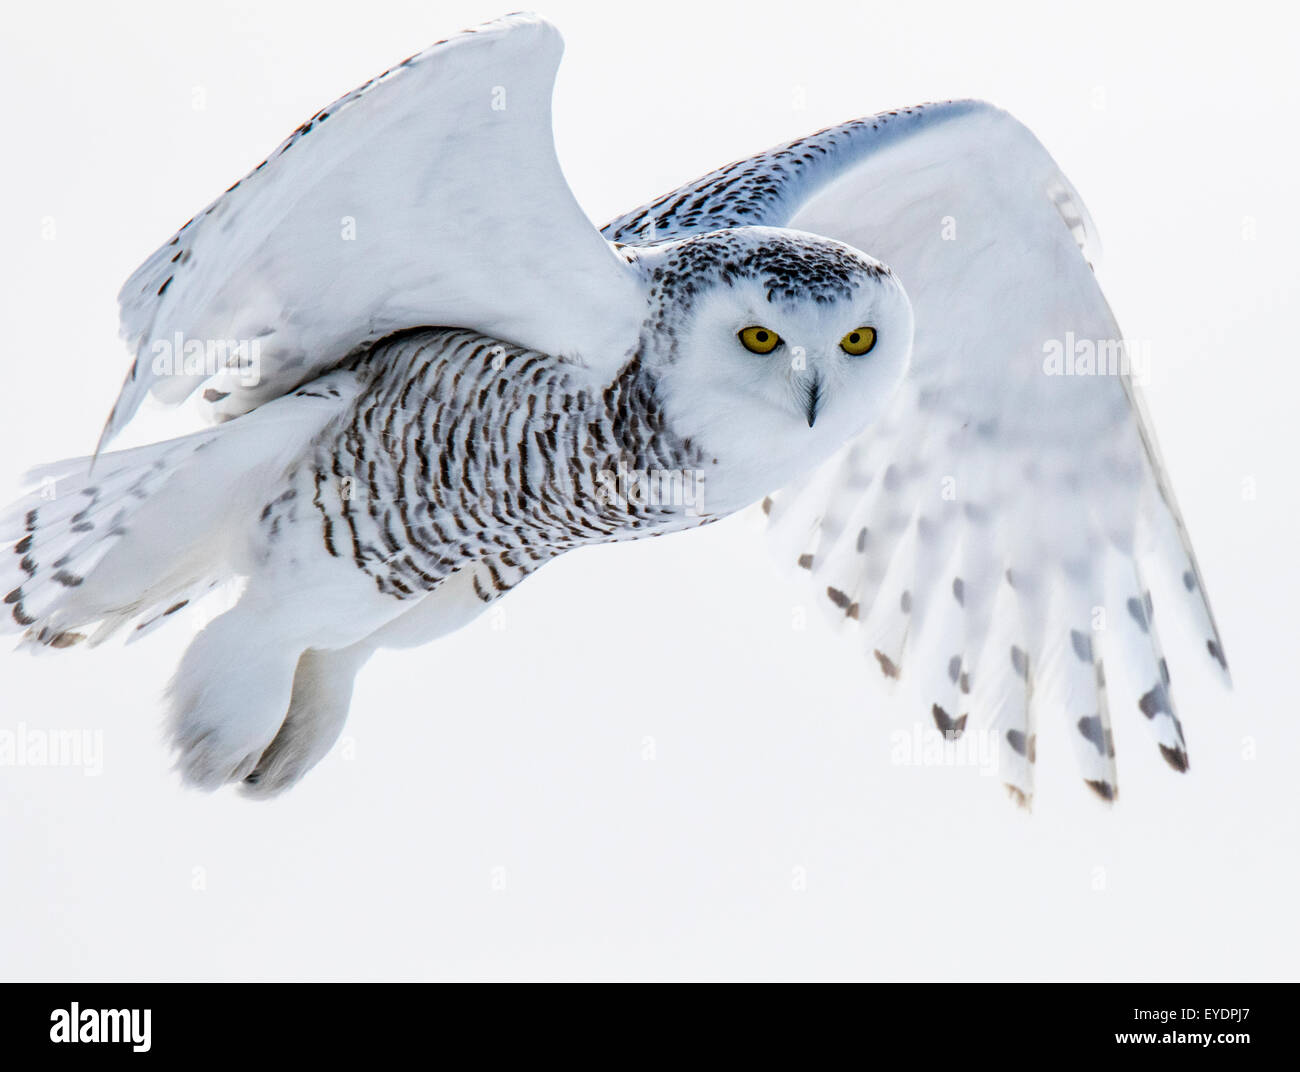 Snowy owl in flight Stock Photo - Alamy